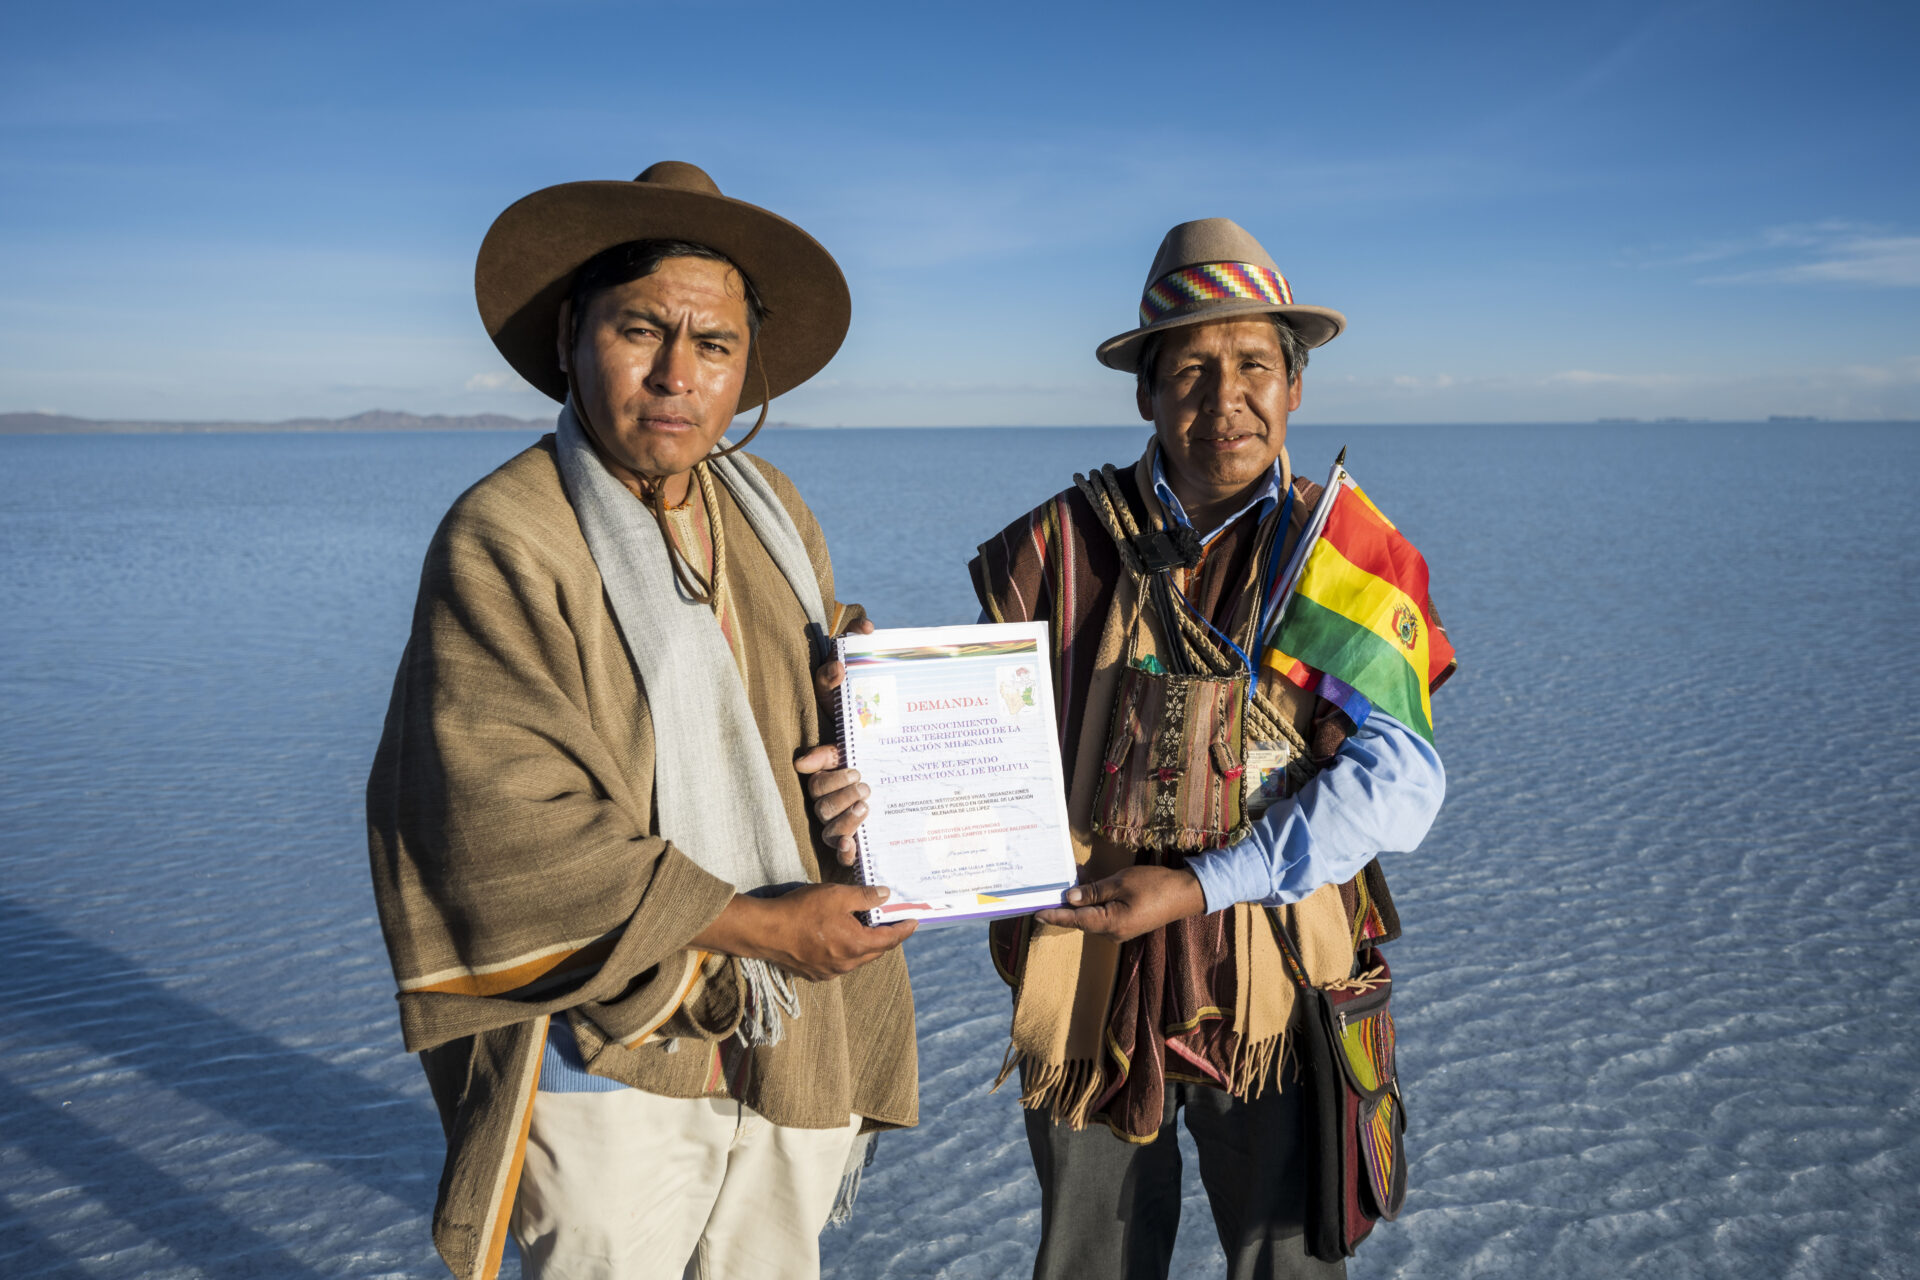 Rohstoffabbau in Bolivien und Peru - eine Gefahr für Mensch und Natur